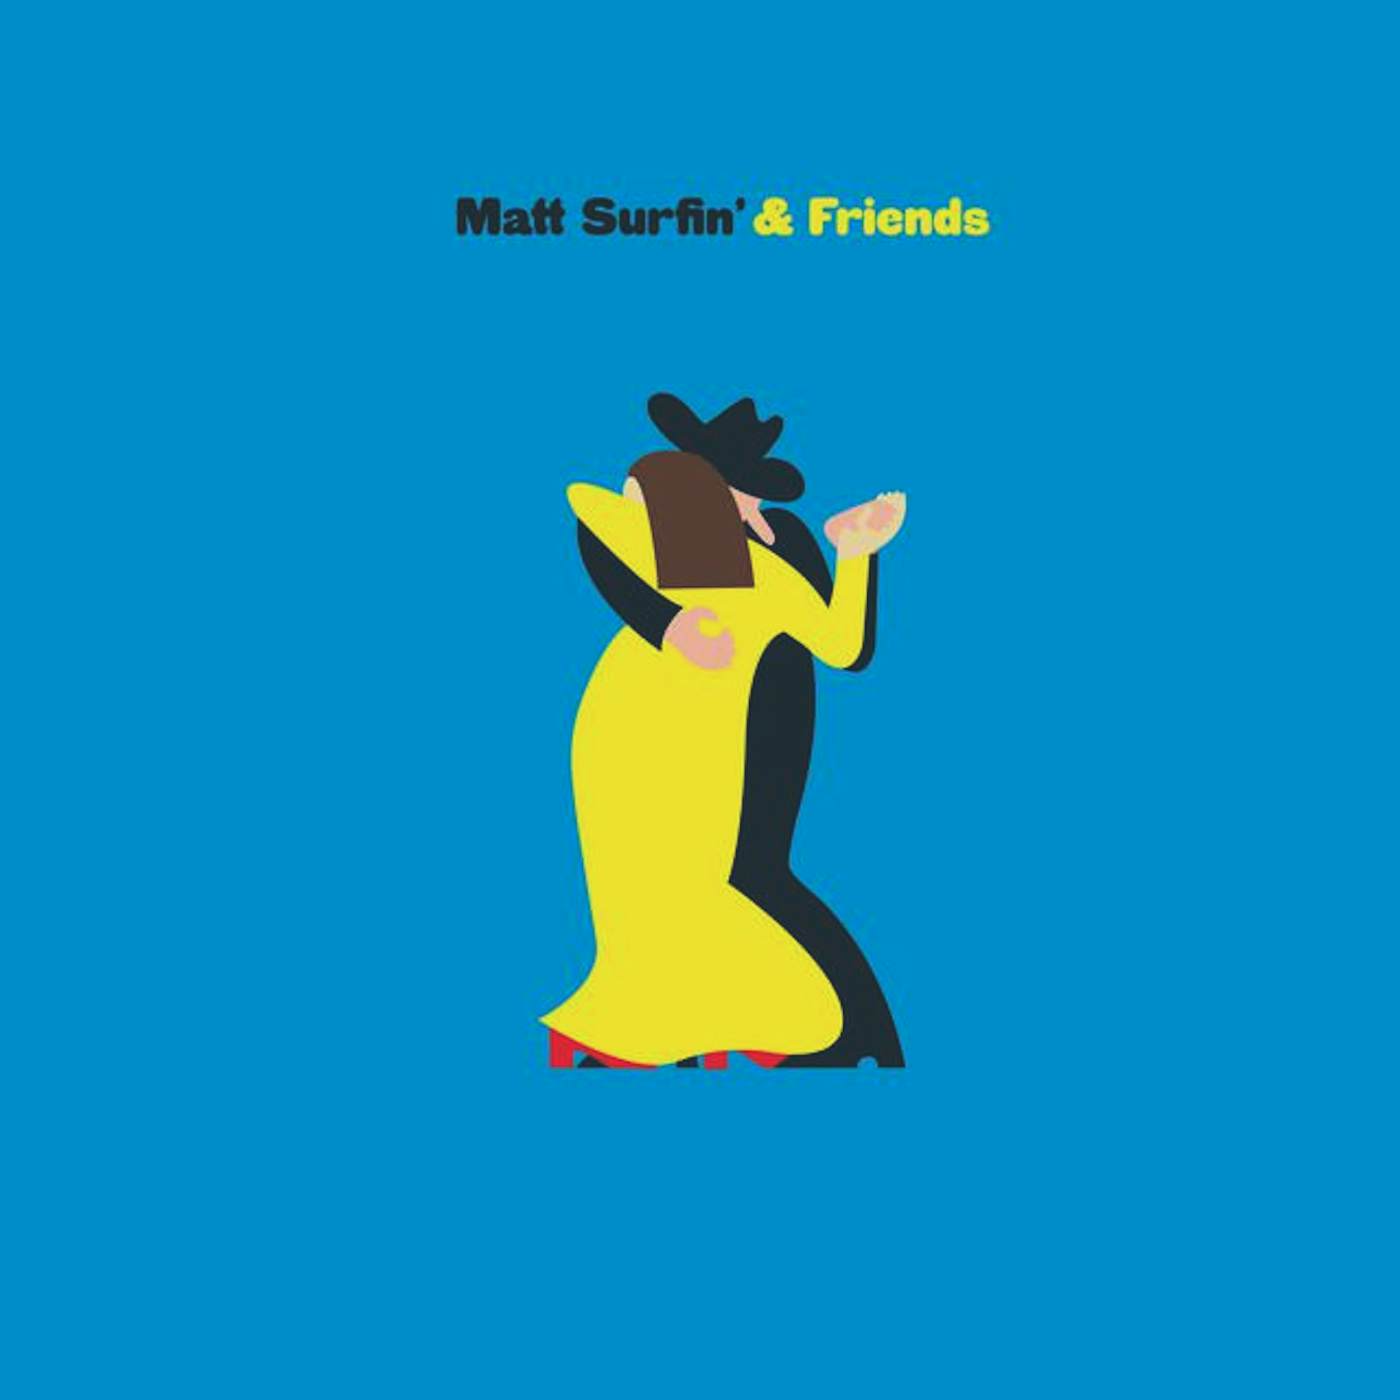 Matt Surfin' & Friends